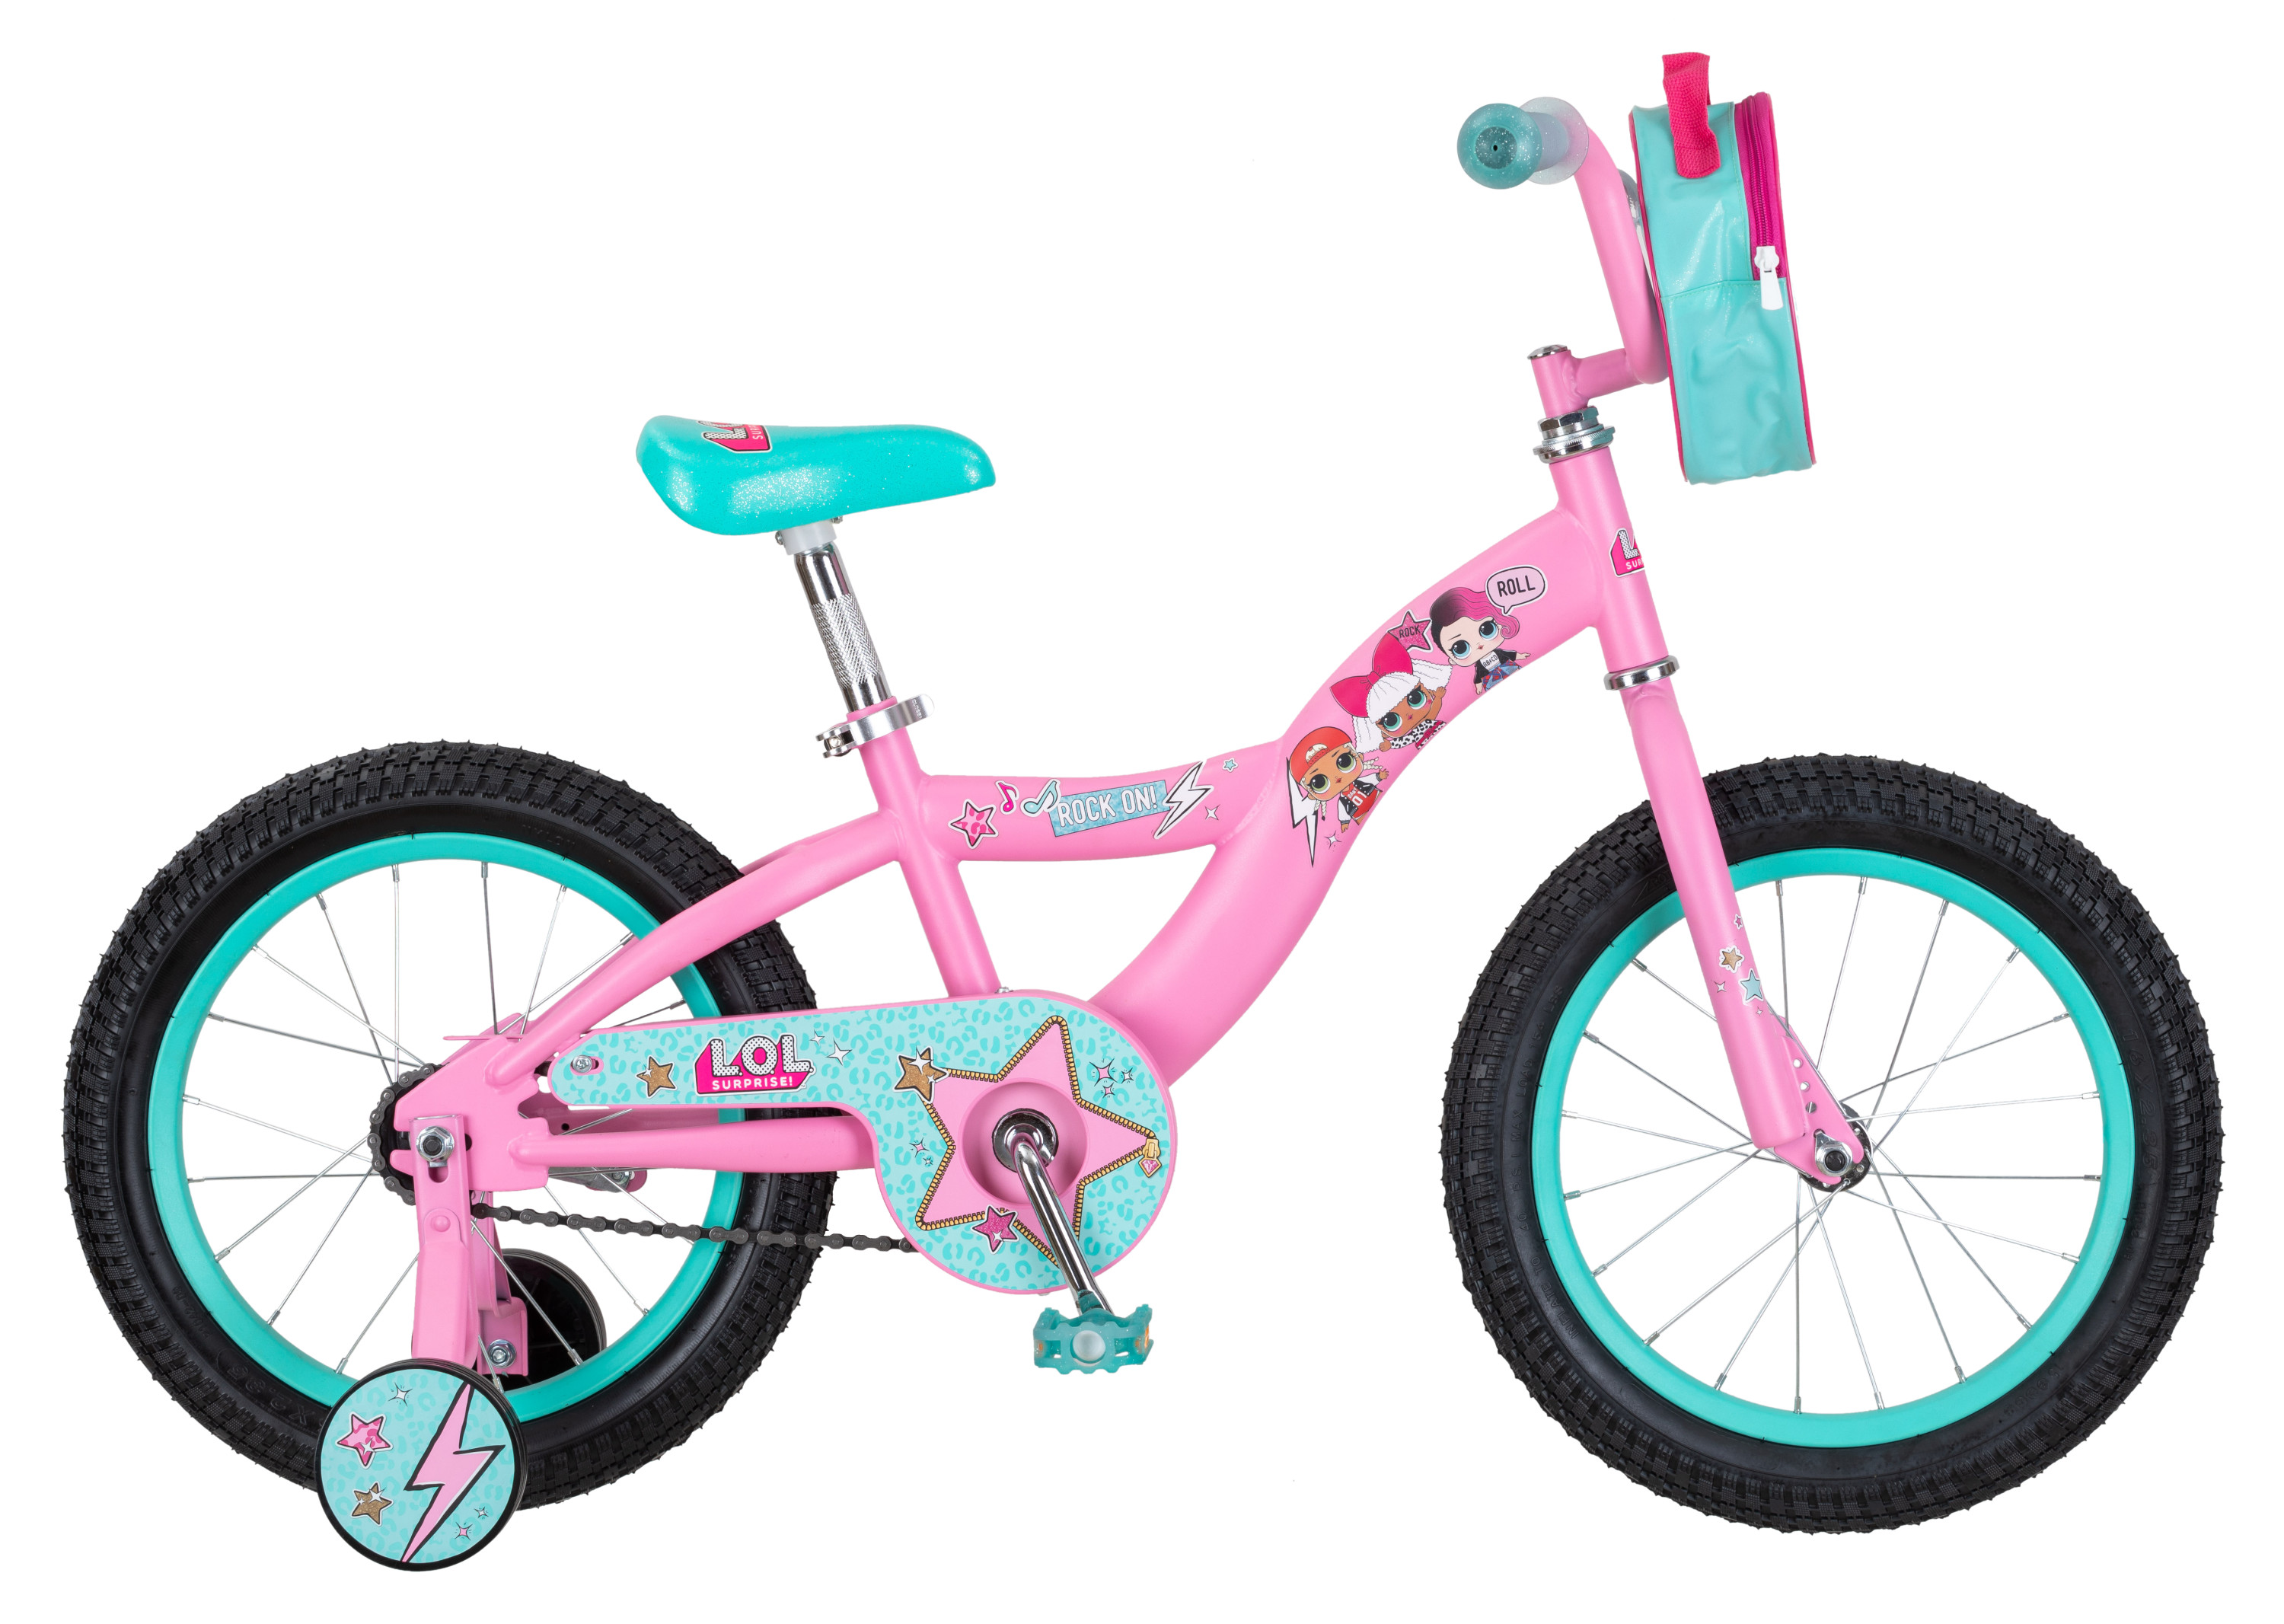 LOL Surprise kids bike, 16-inch wheel, Girls, Pink - image 4 of 9